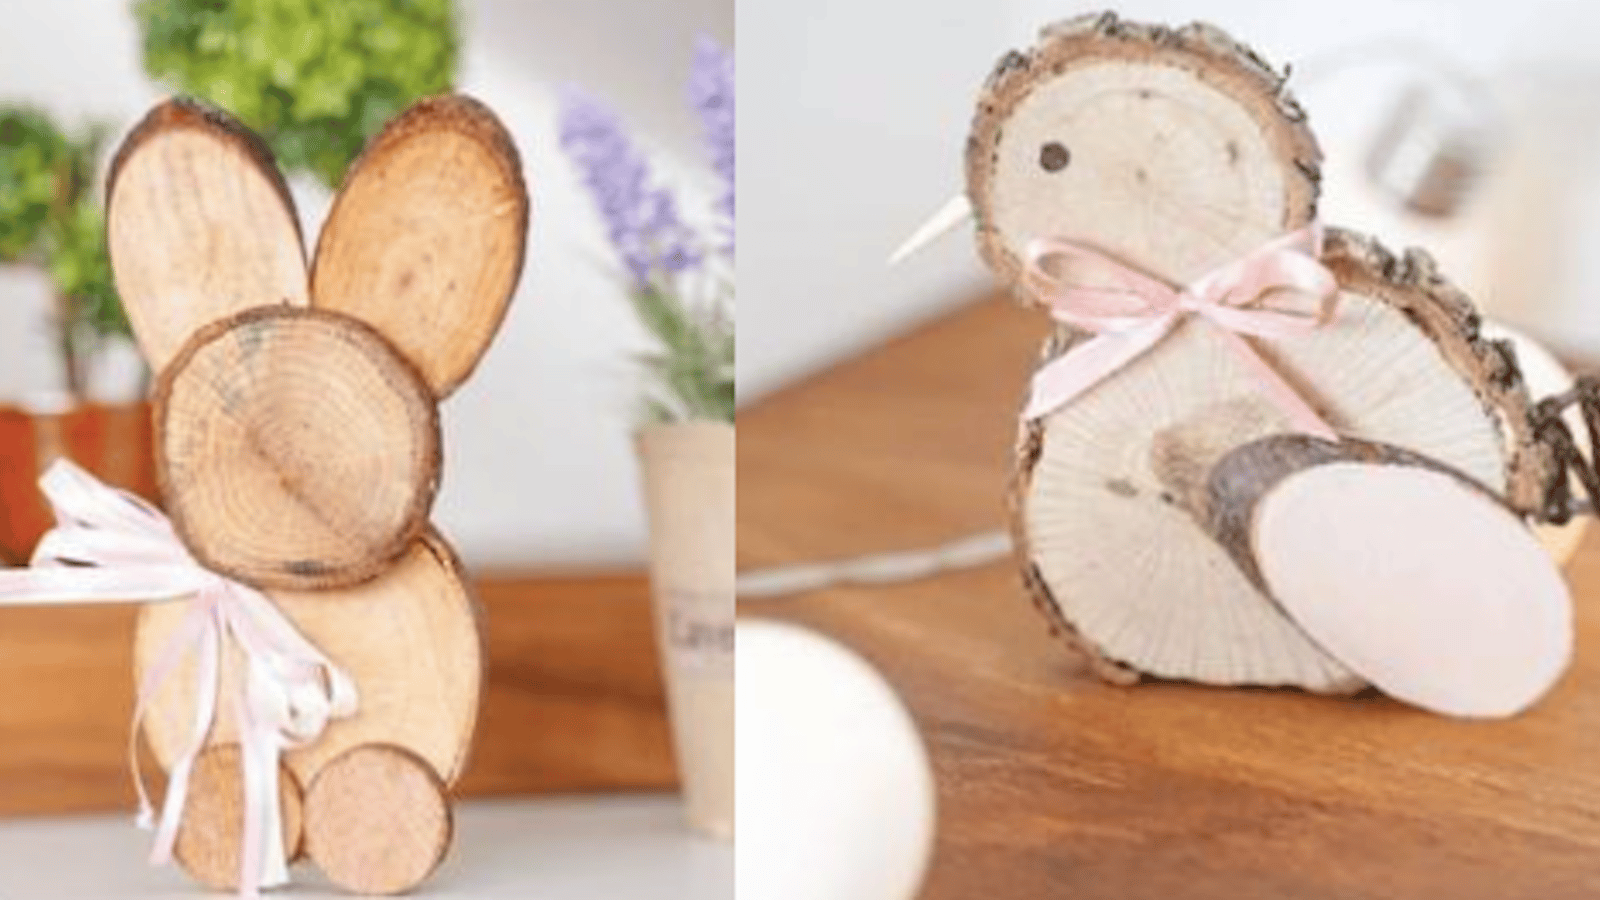 Comment faire un poussin ou un lapin en rondelles de bois